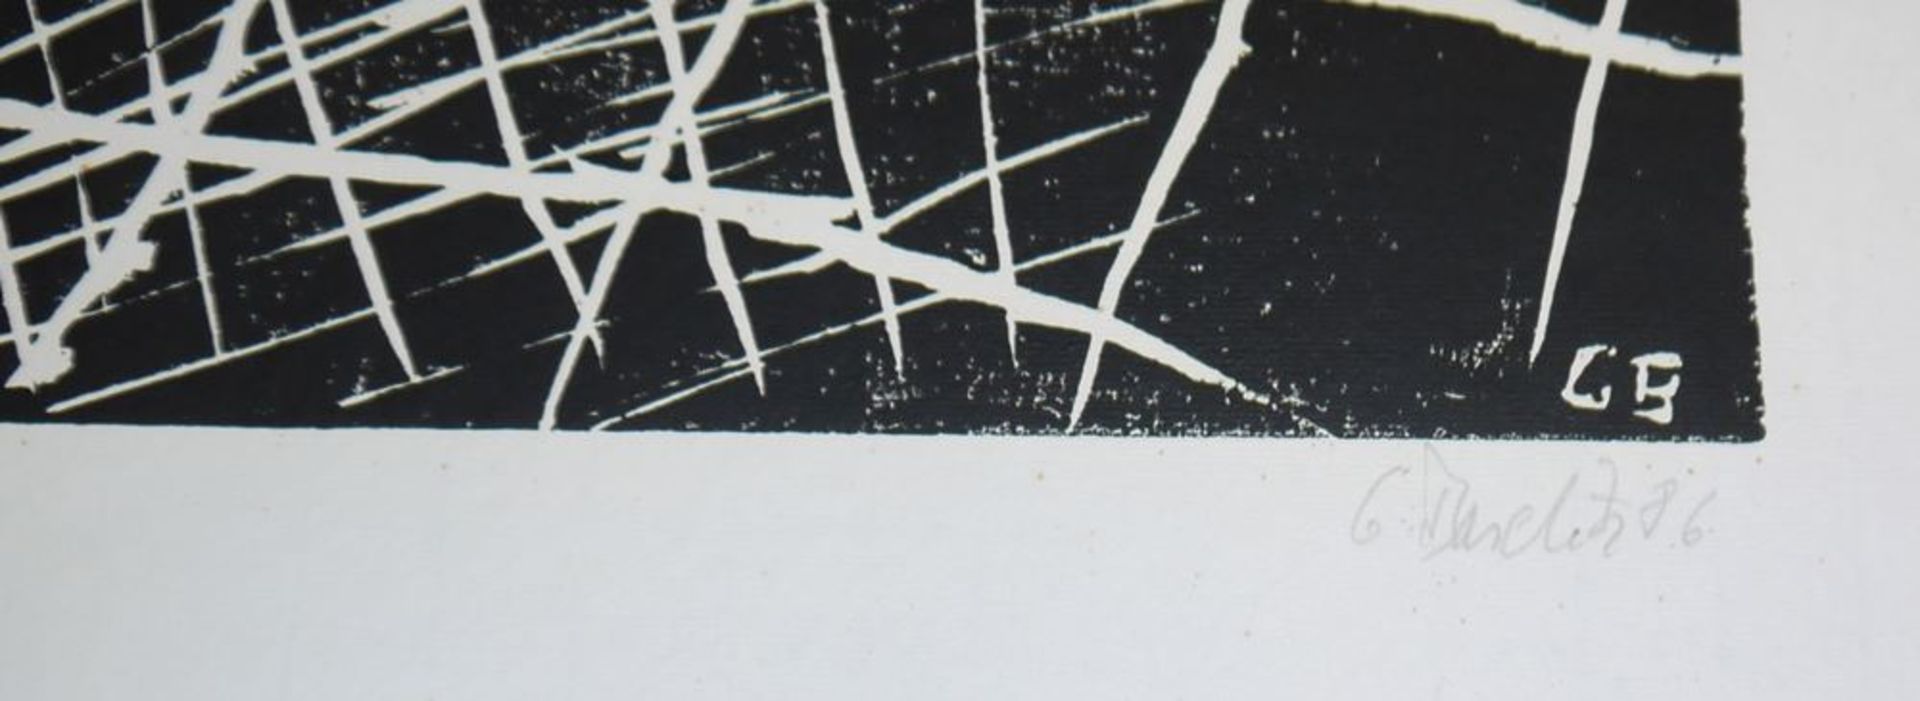 Georg Baselitz, "Zwei Pferde", signierter Holzschnitt von 1986 - Bild 2 aus 2